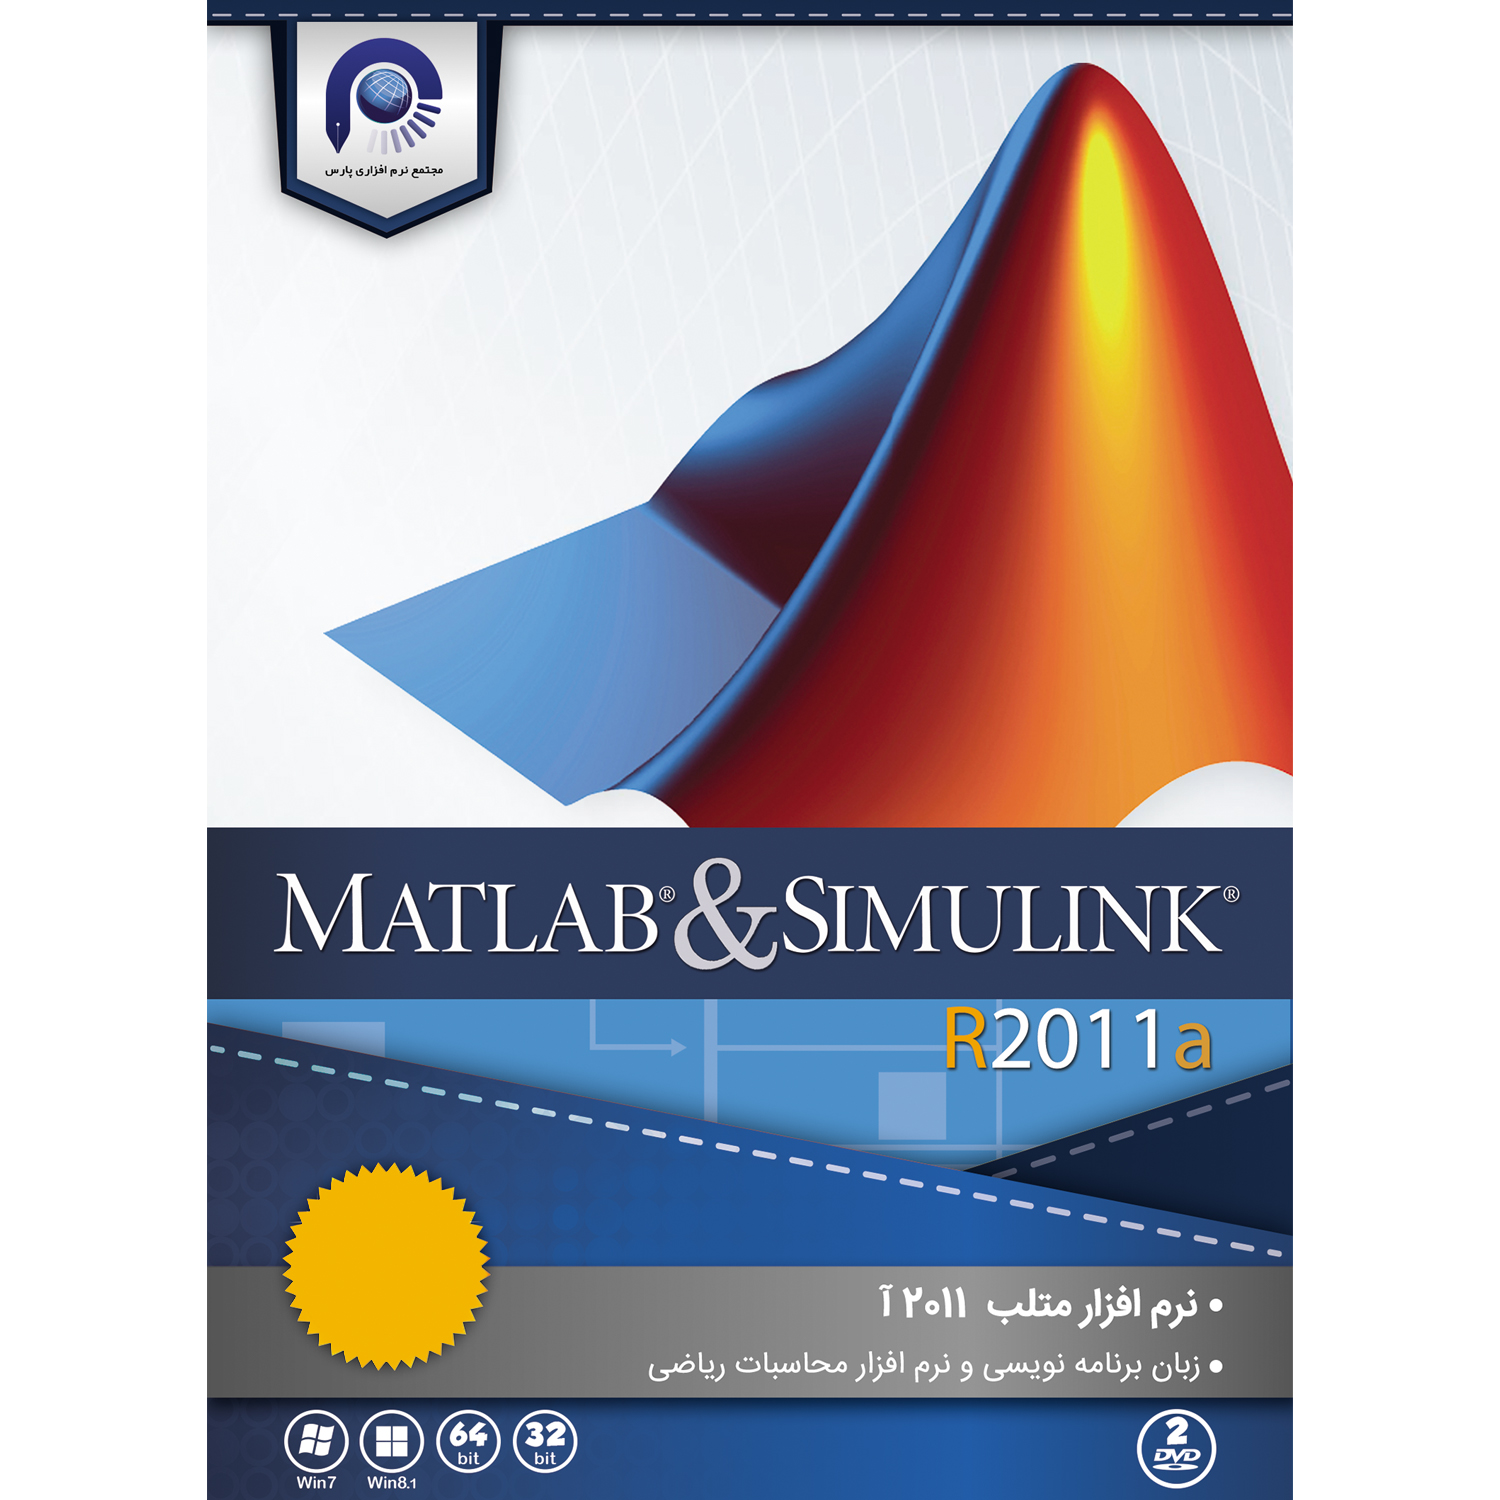 مجموعه نرم افزاری  MATLAB & SIMULINK R2011a  نشر مجتمع نرم افزاری پارس